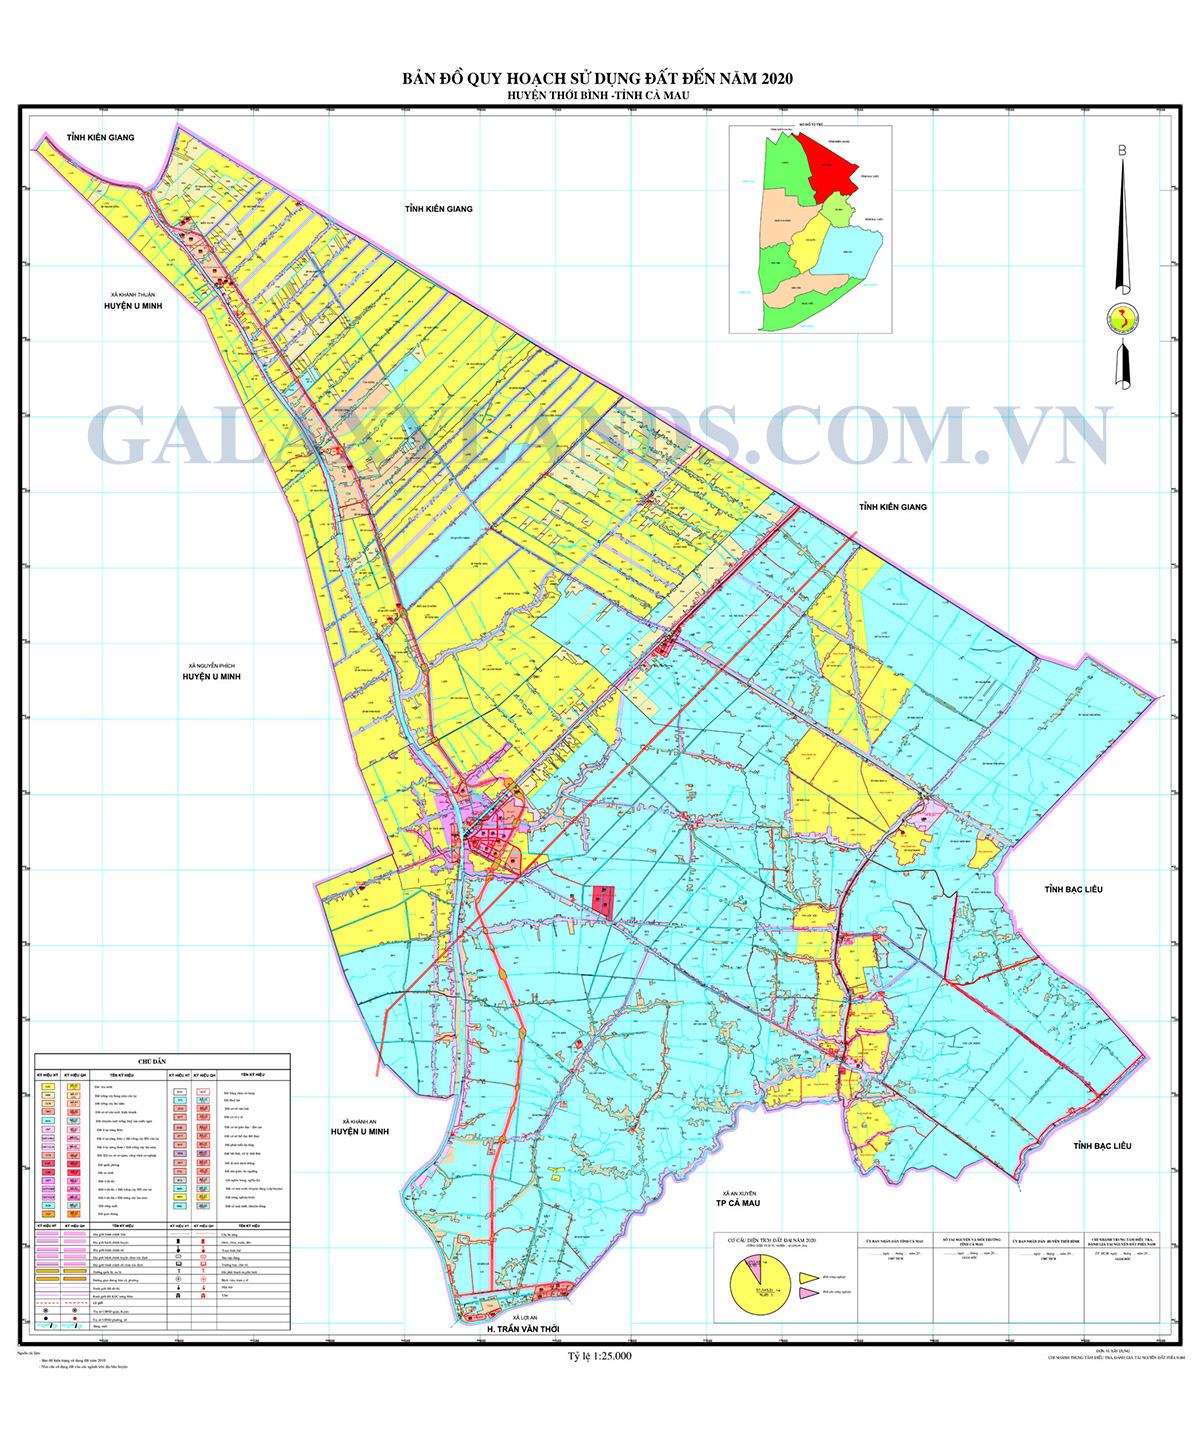 Bản đồ quy hoạch sử dụng đất huyện Thới Bình - Bản đồ quy hoạch huyện Thới Bình